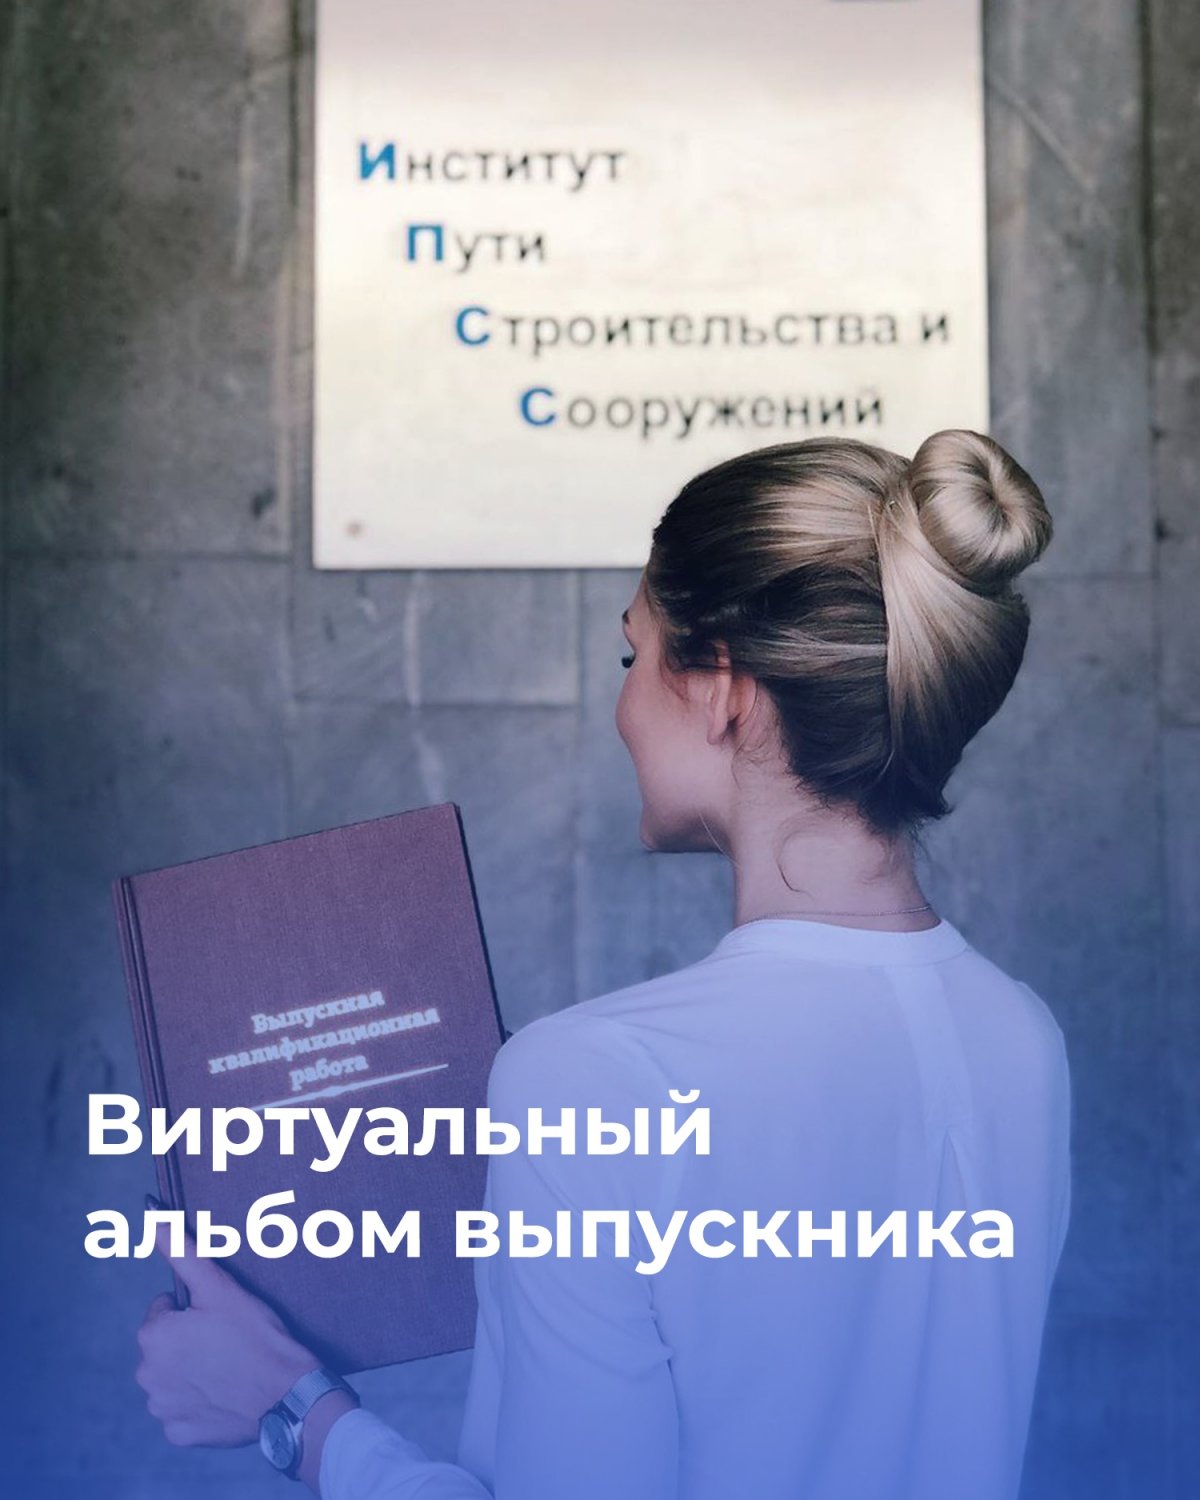 Создать виртуальный альбом выпускника вуза решили студенты Российского университета транспорта, объявив флешмоб в социальных сетях «Я – инженер»